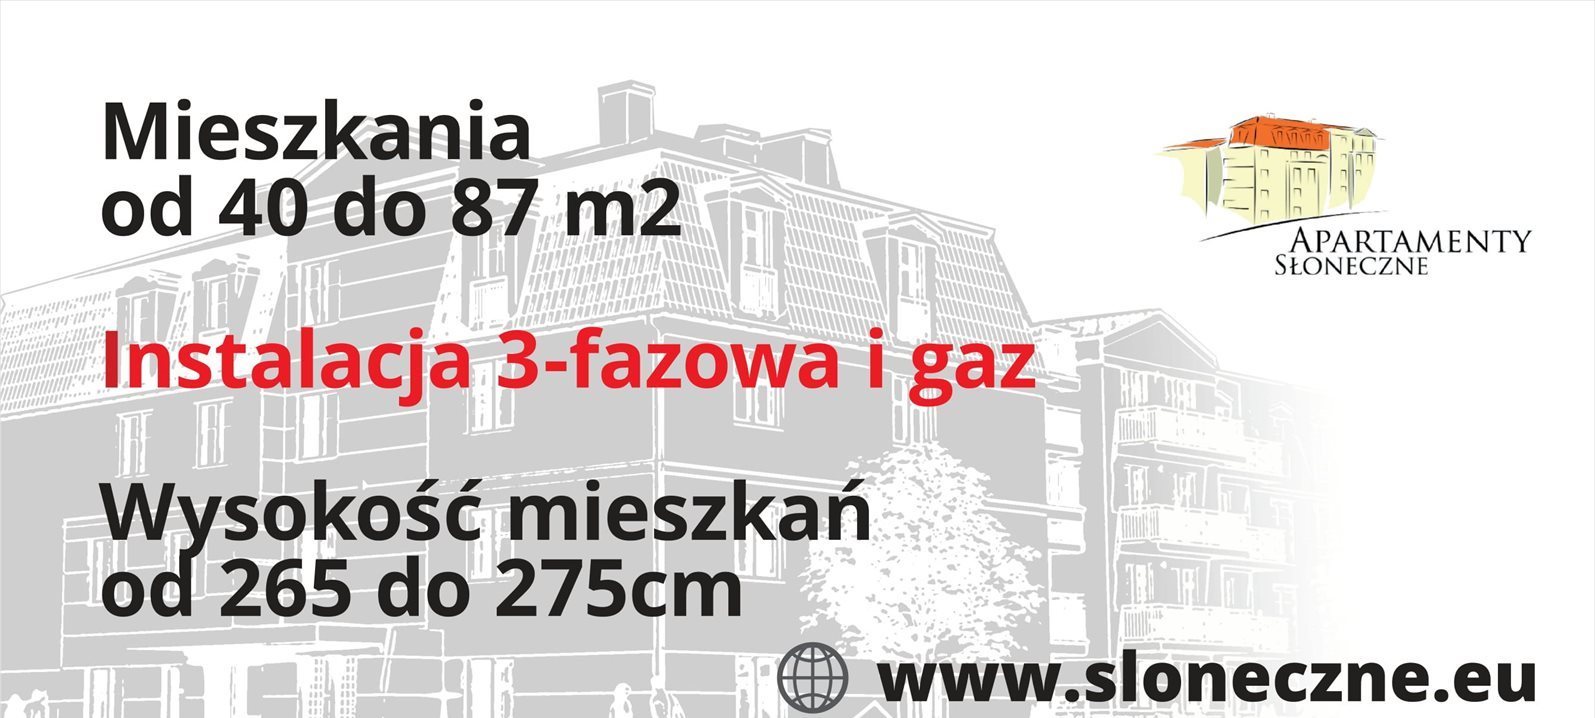 Mieszkanie trzypokojowe na sprzedaż Sosnowiec, Sielec, Apartamenty Słoneczne, Klimontowska 47  65m2 Foto 4